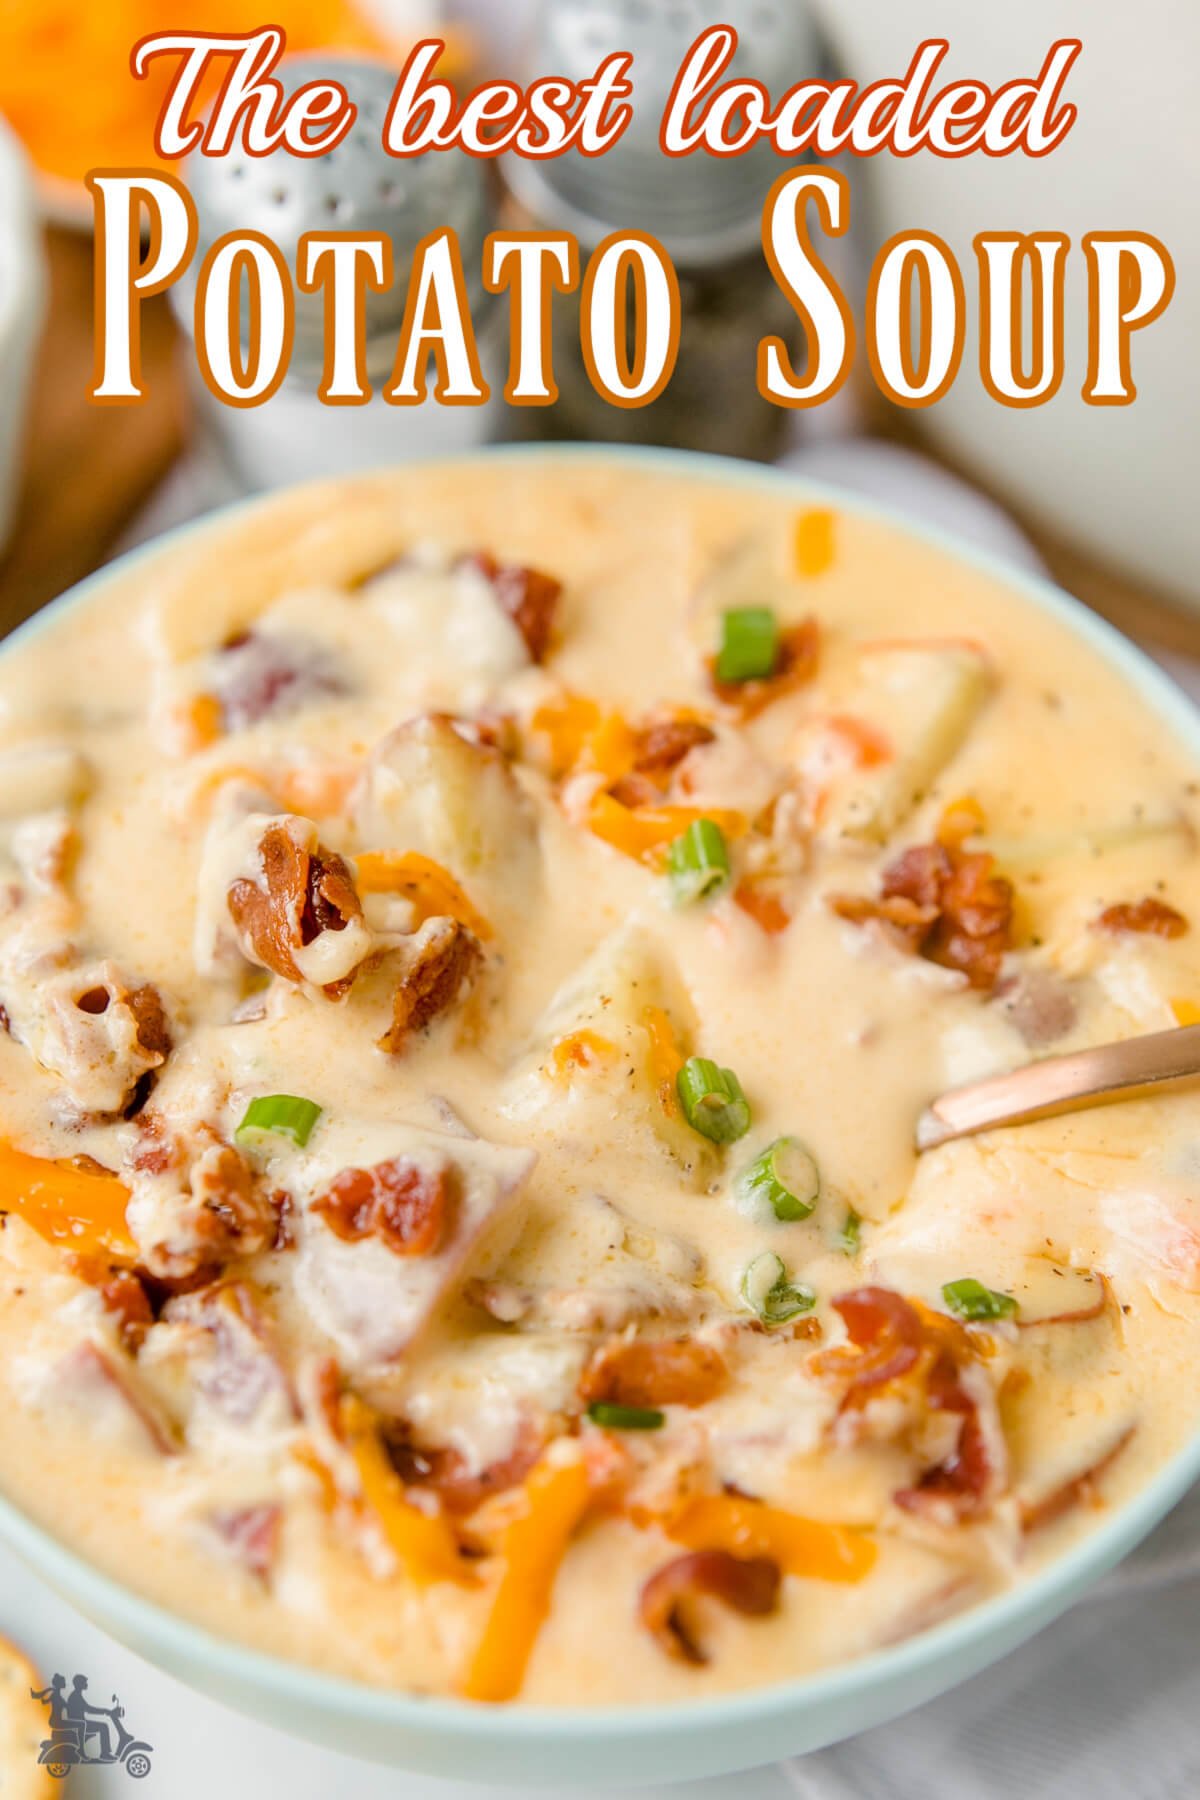 A bowl of chunky potato soup